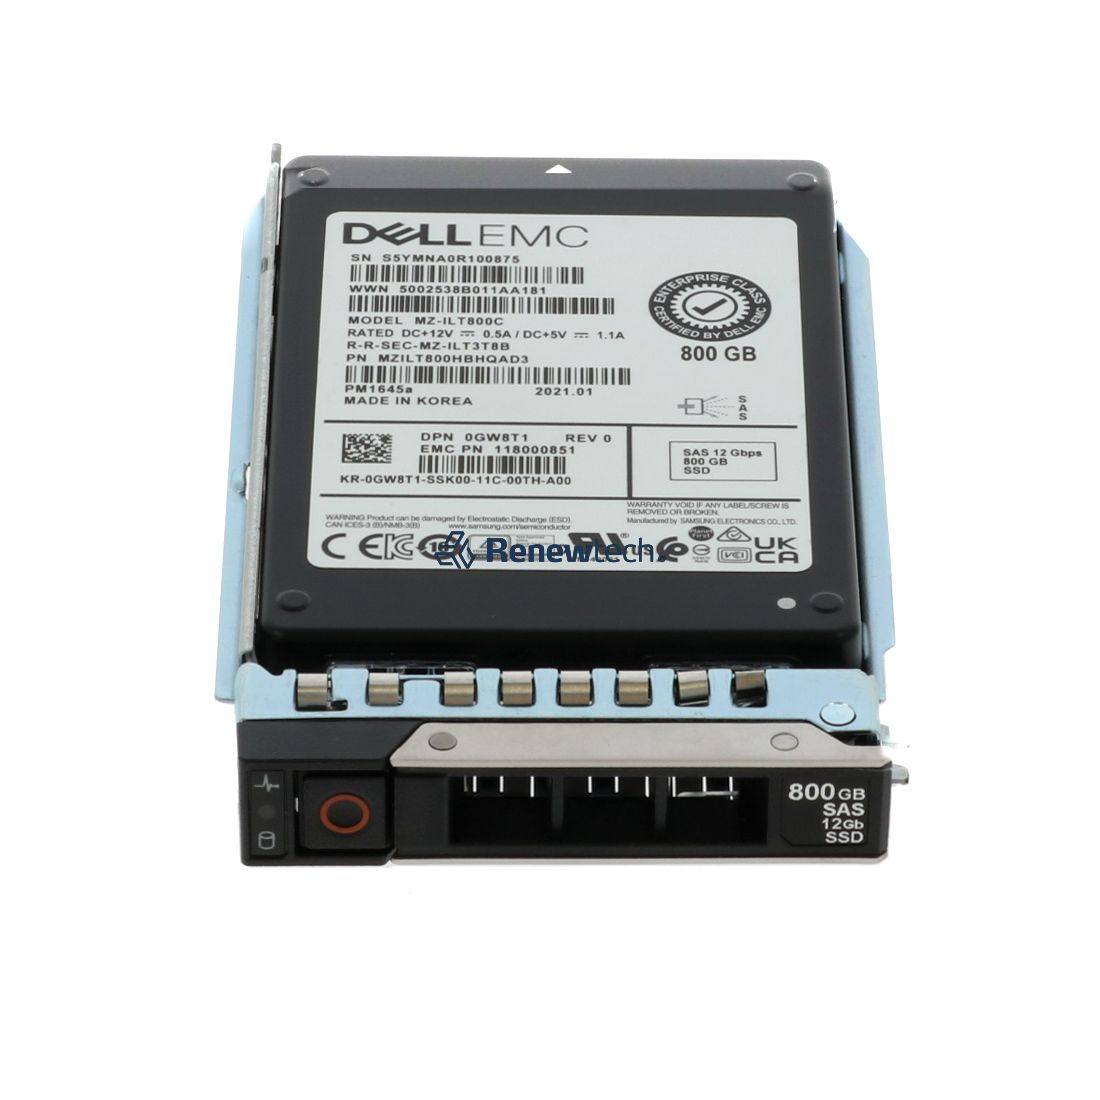 DELL GW8T1 - 800GB SSD 2.5 SAS 12G MIX MZILT800HBHQ0D3 ME4 SERIES